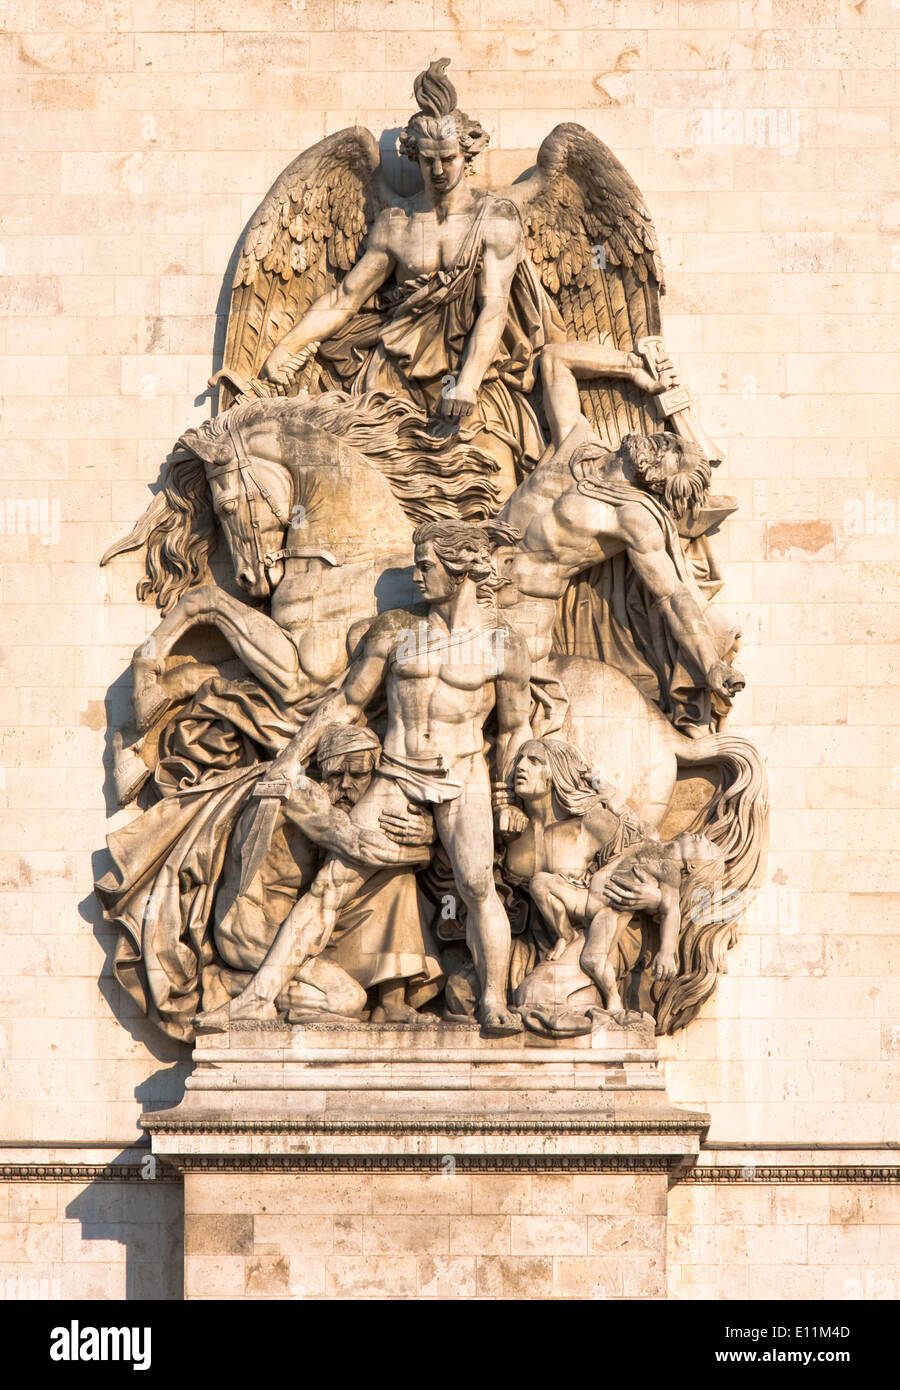 Statue am Arc de Triomphe, Paris, Frankreich - Arc de Triomphe at Champs-Elysees, France, Paris Stock Photo